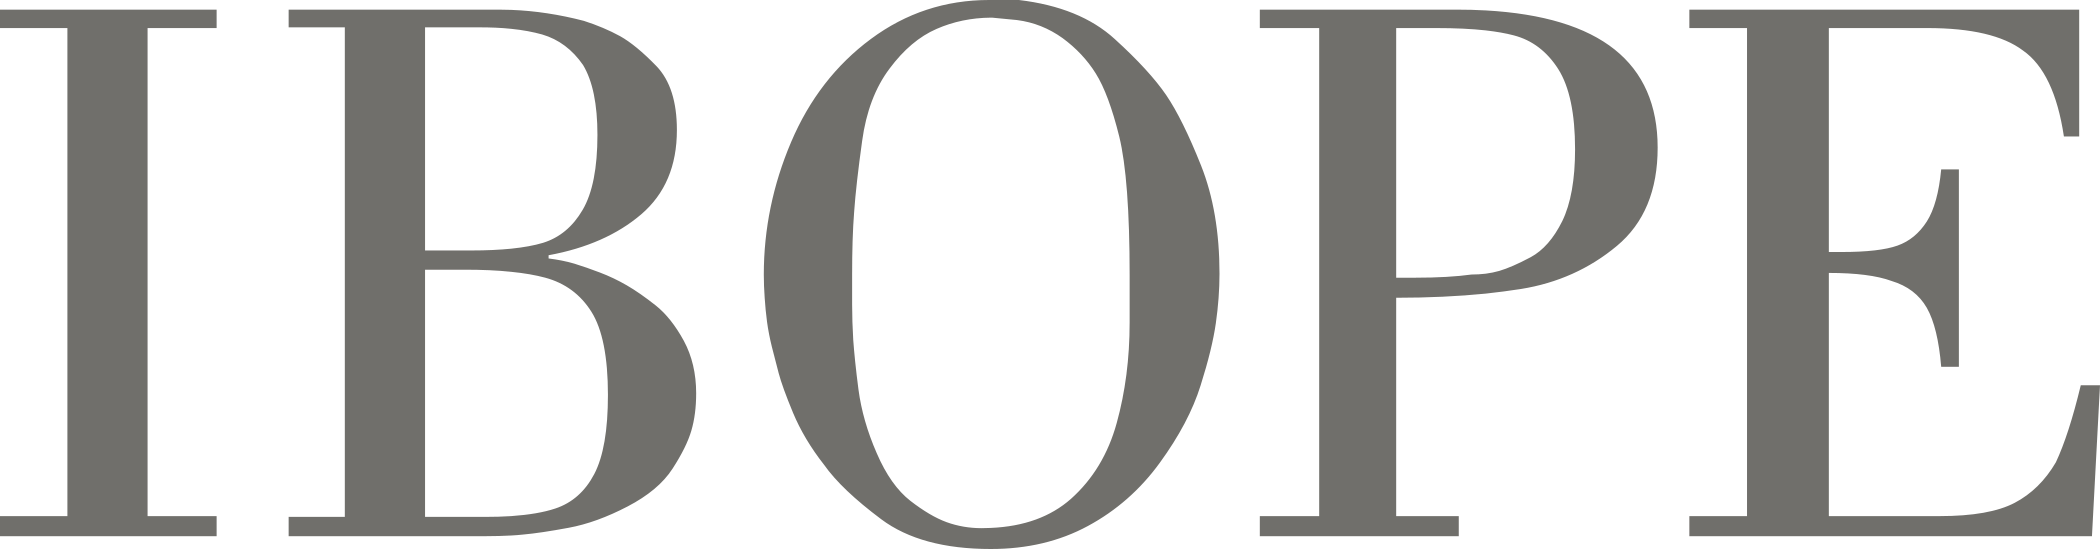 IBOPE logo.